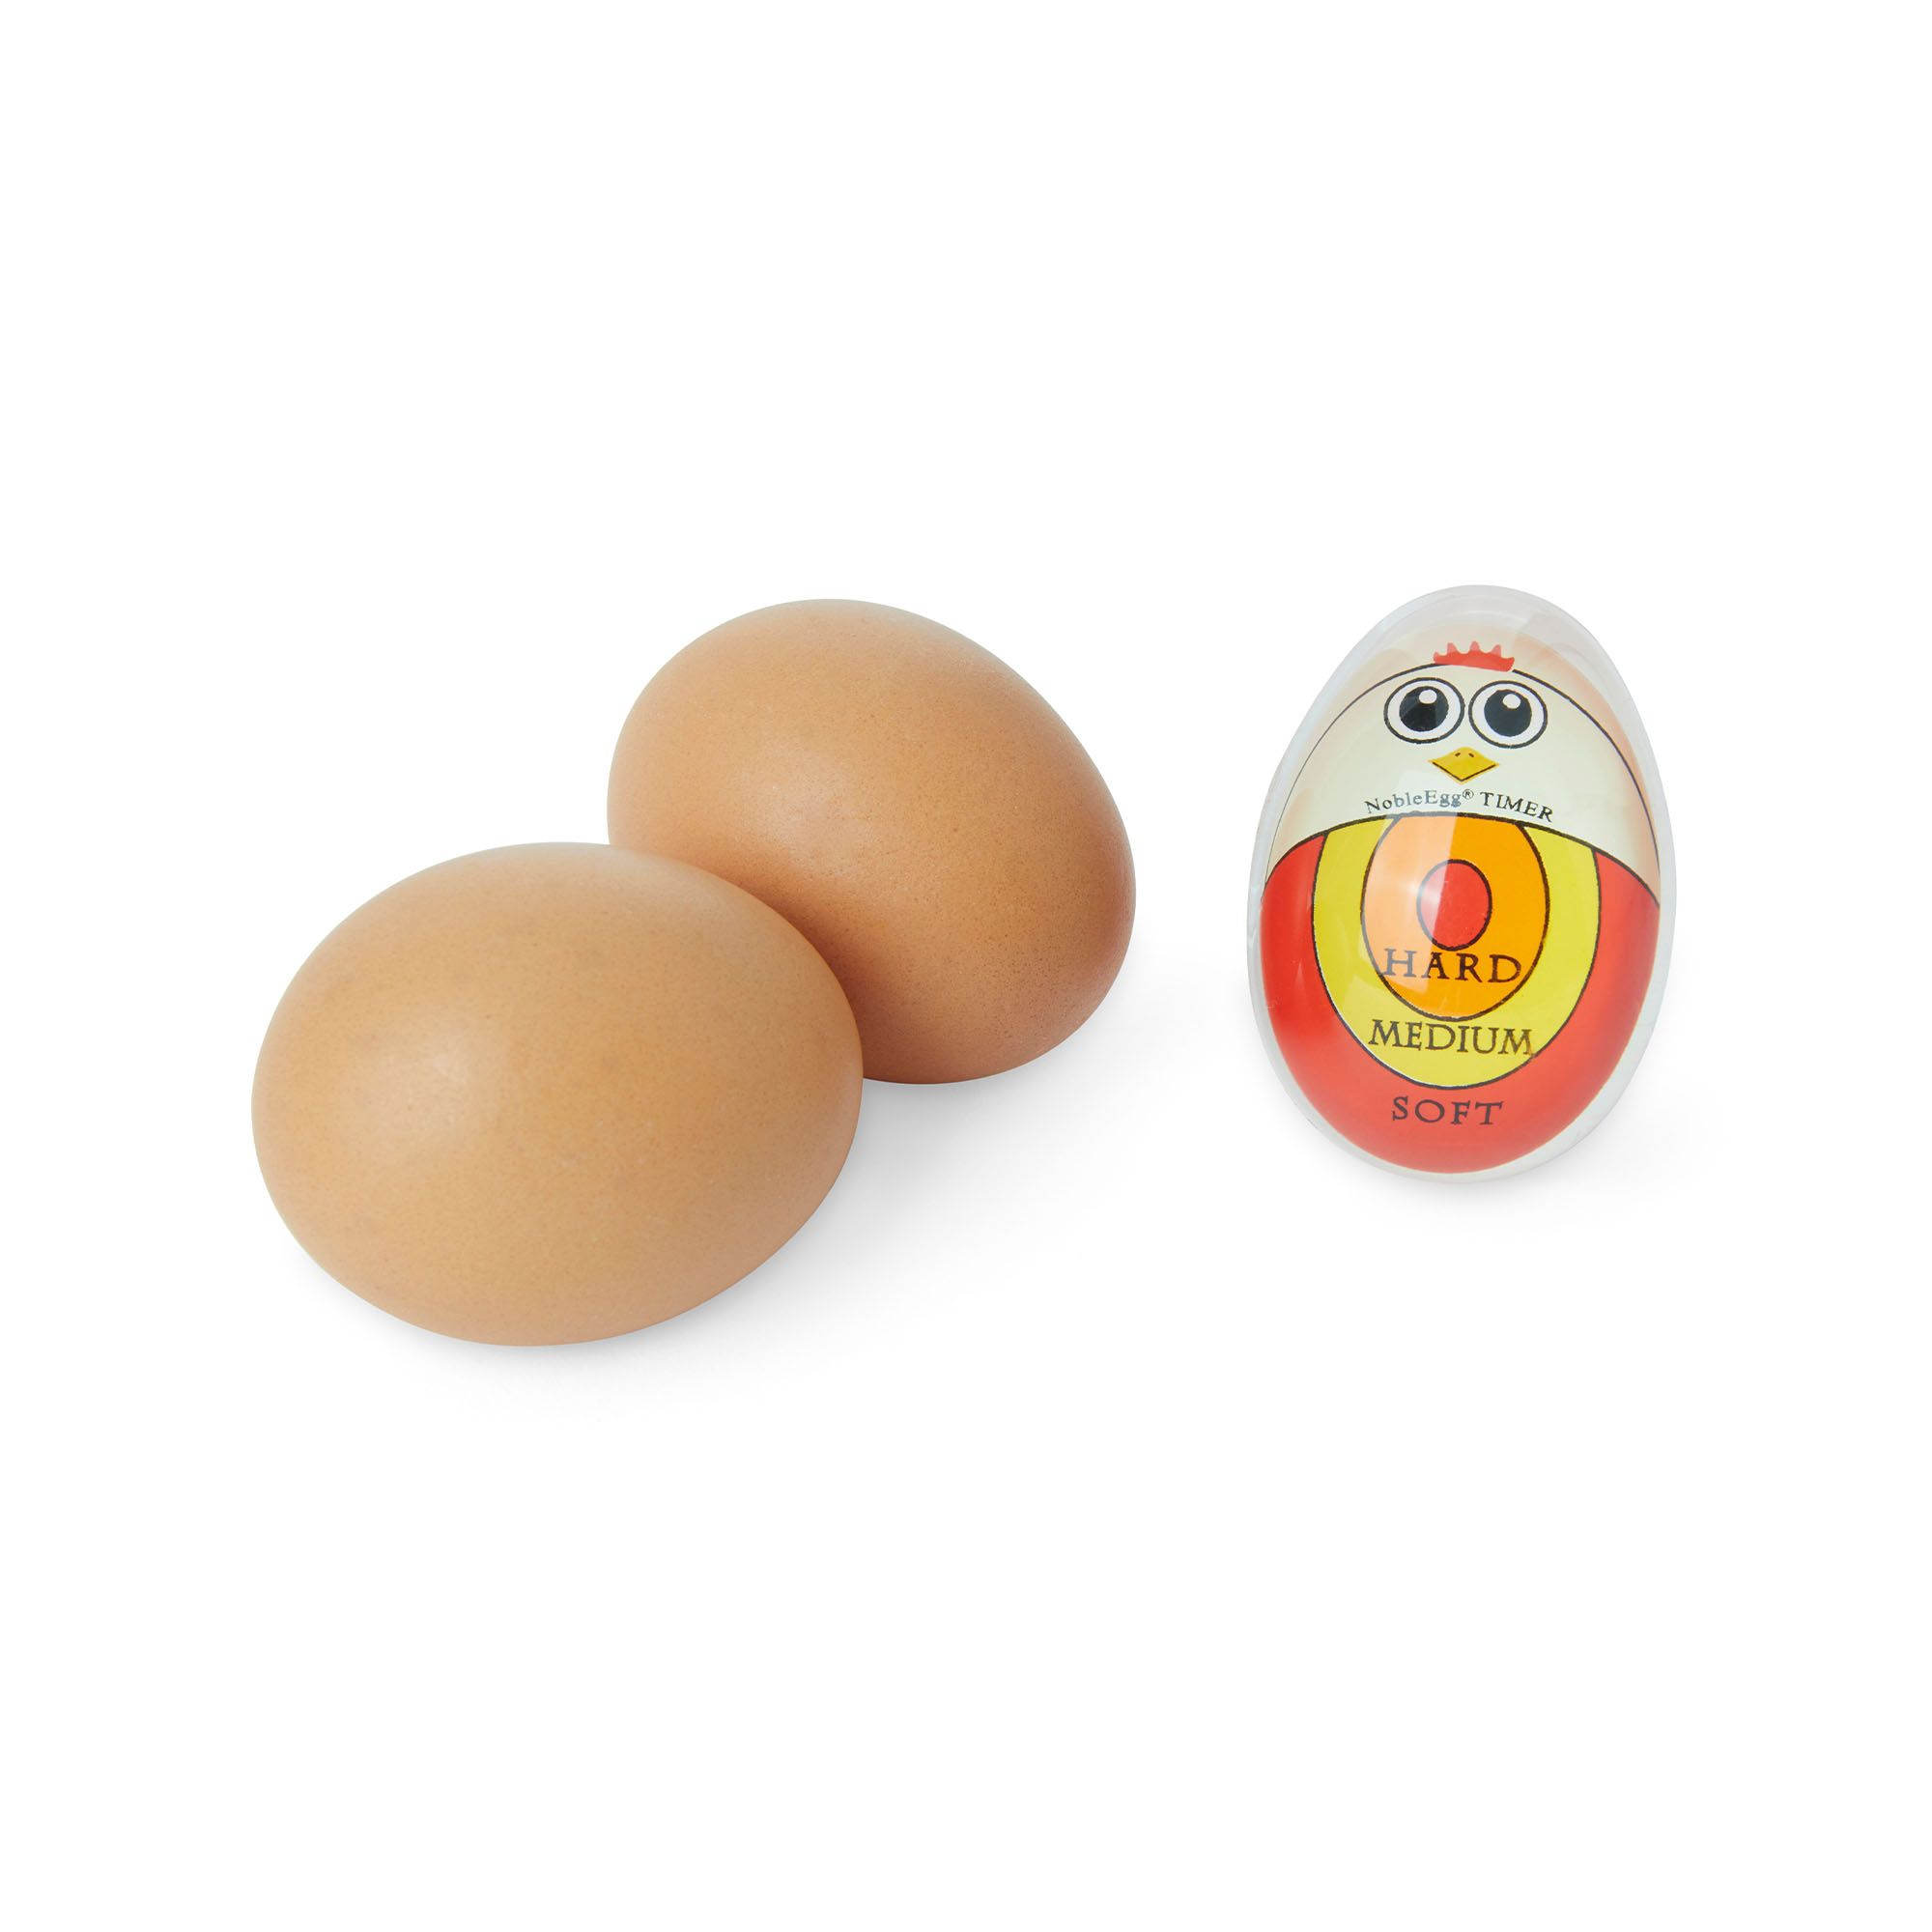 Indicatore per cottura uova, , large